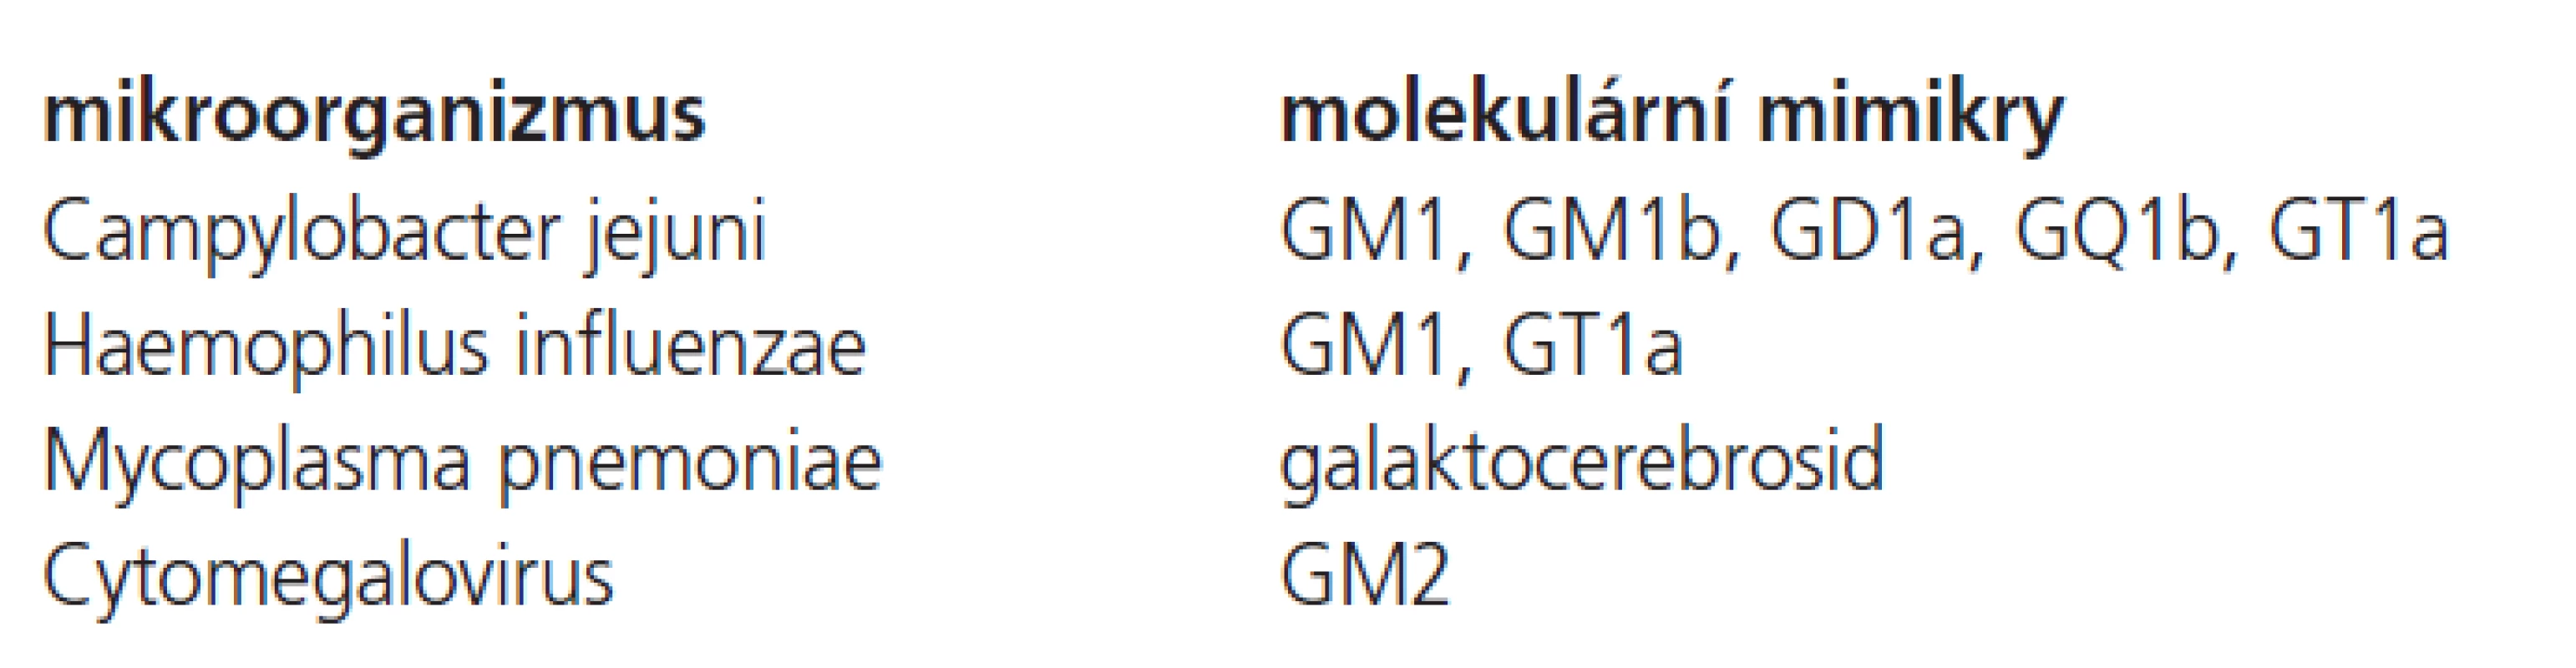 Lidské gangliosidy versus lipo-oligosacharidy mikrobiálního původu – molekulární mimikry.